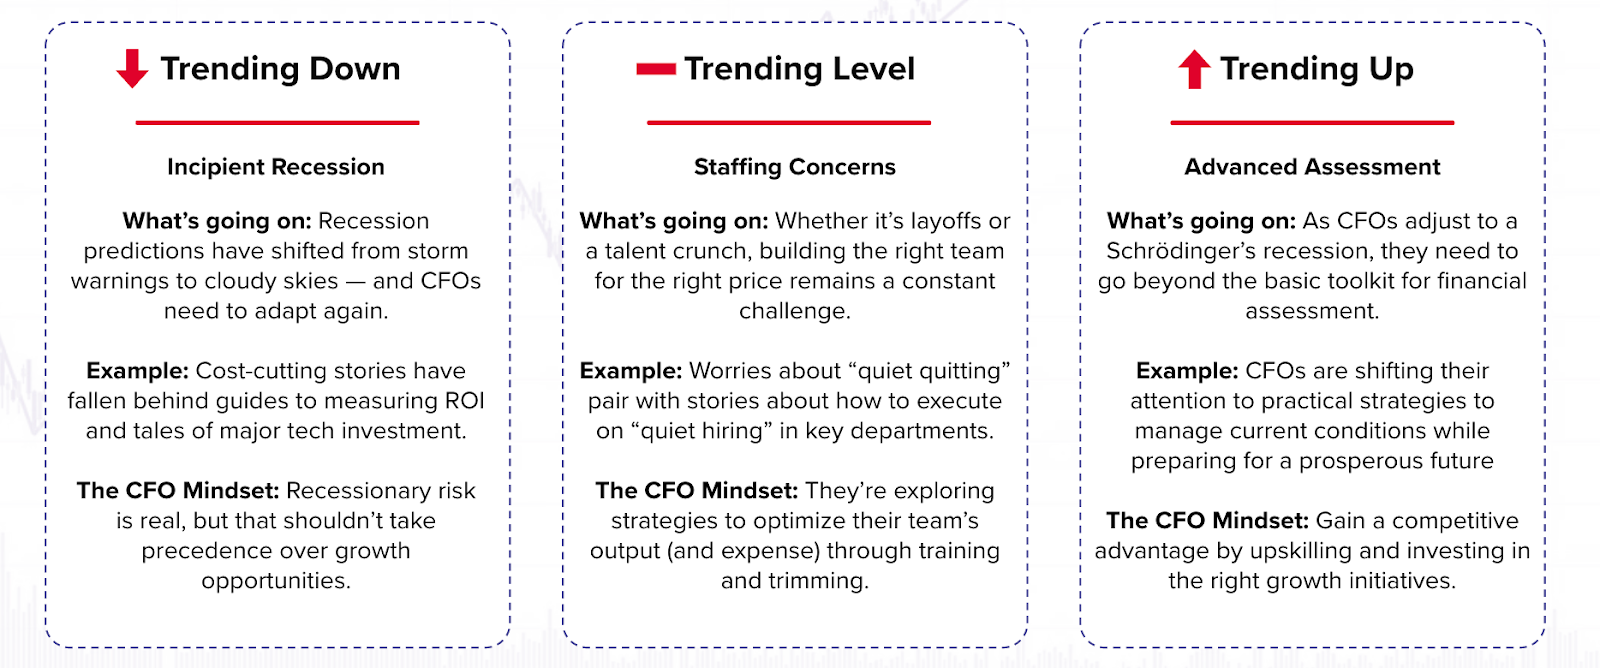 CFO content trends CFO marketing tactics CFO Dive audience data